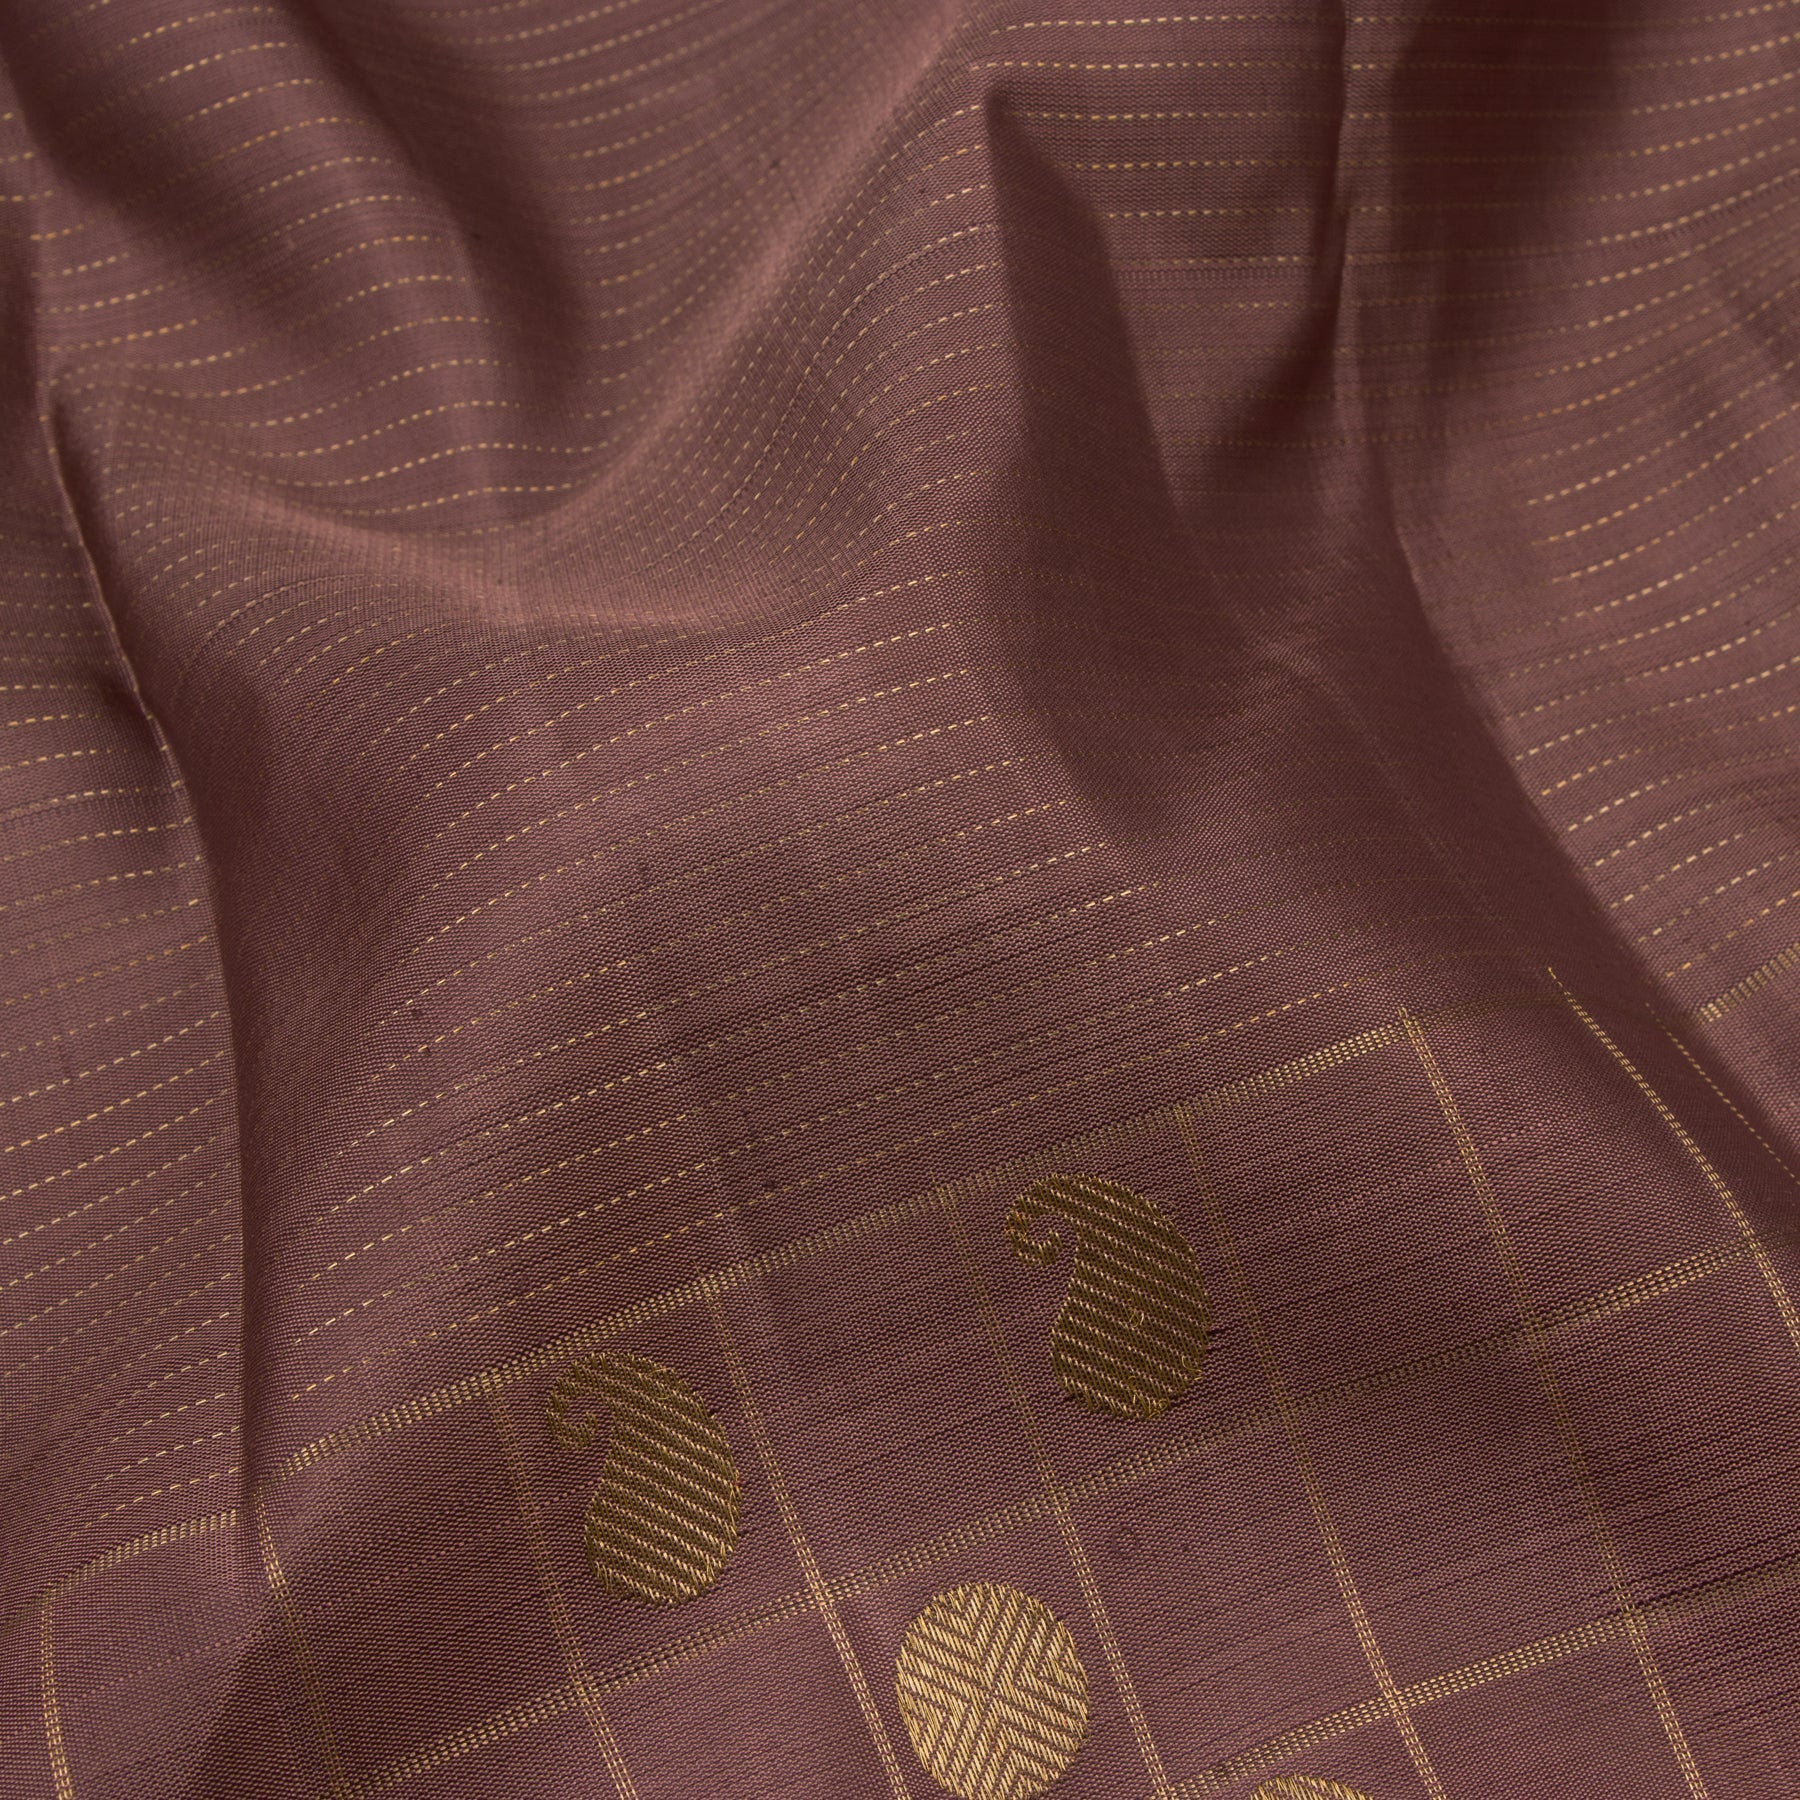 Kanakavalli Kanjivaram Silk Sari 22-599-HS001-14584 - Fabric View